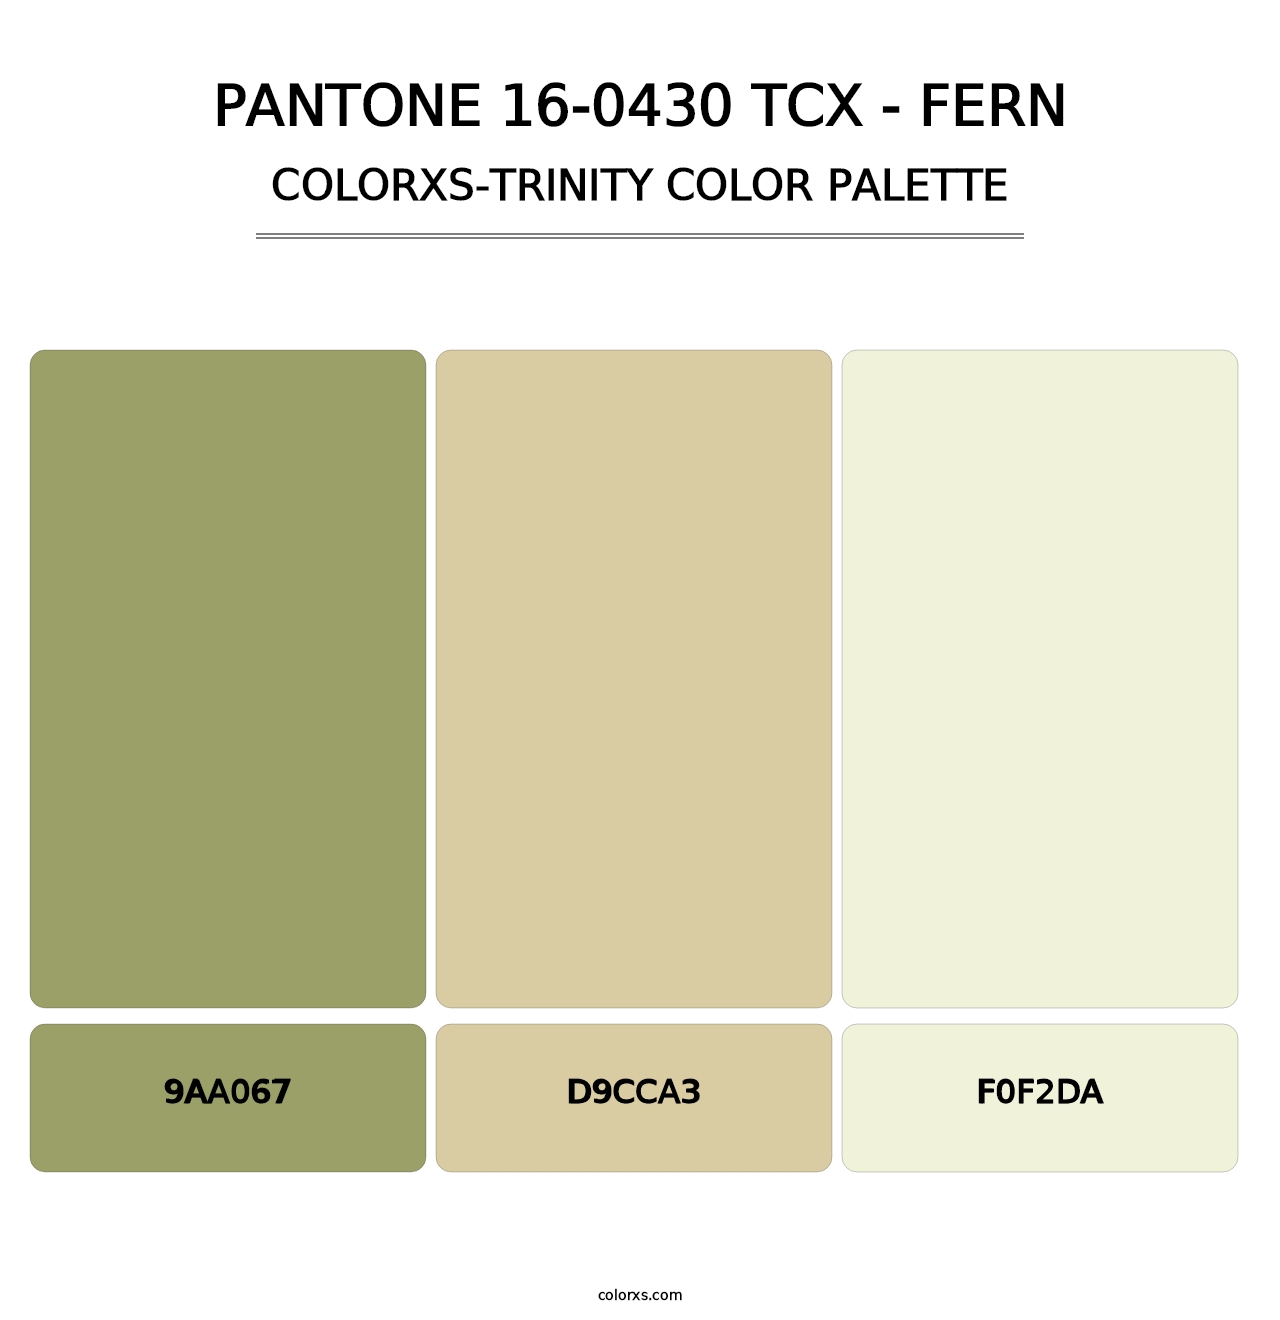 PANTONE 16-0430 TCX - Fern - Colorxs Trinity Palette